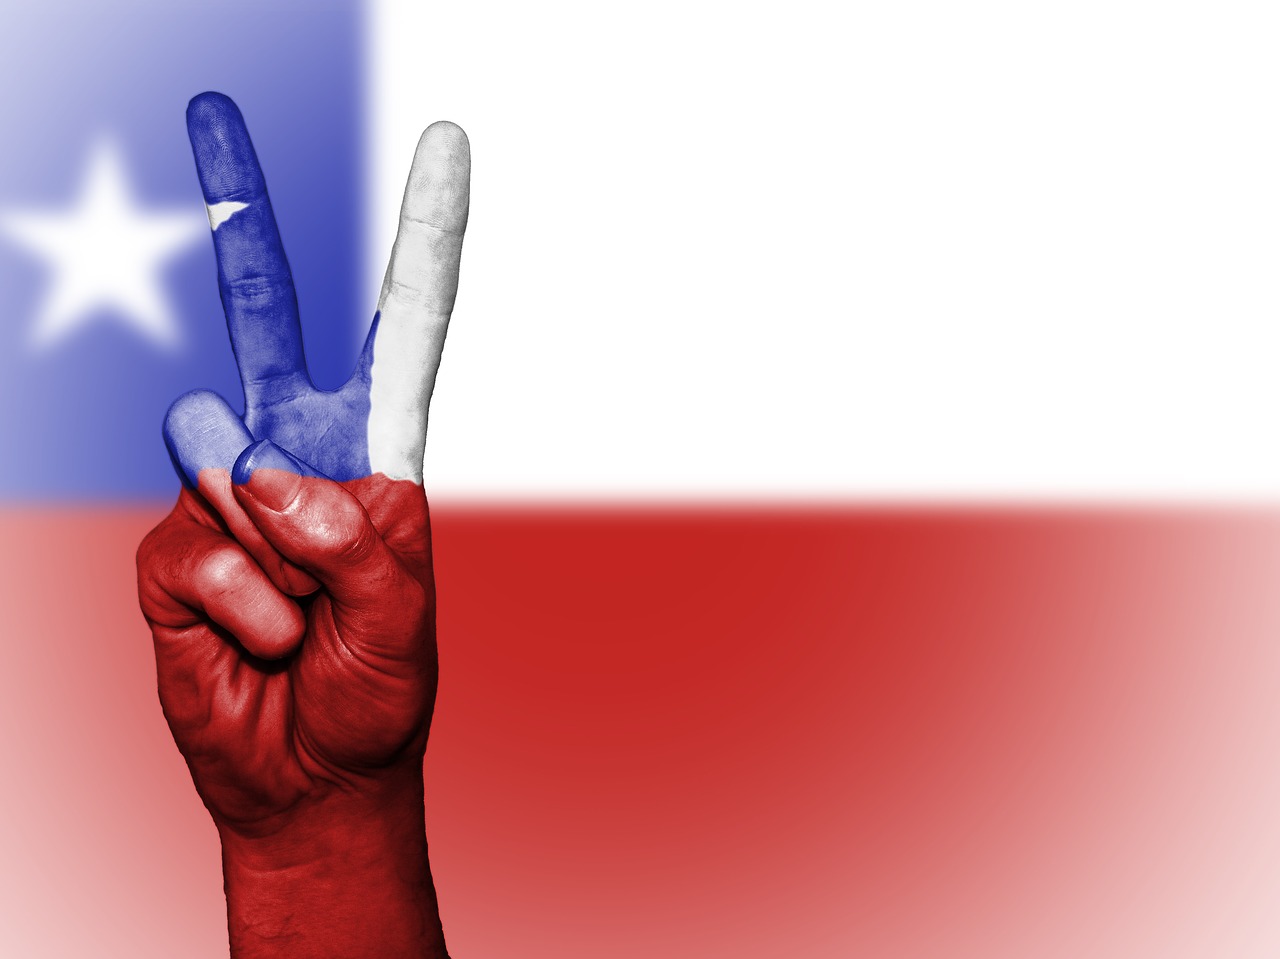 Los  pasos de Chile a una verdadera democracia son una esperanza para el mundo